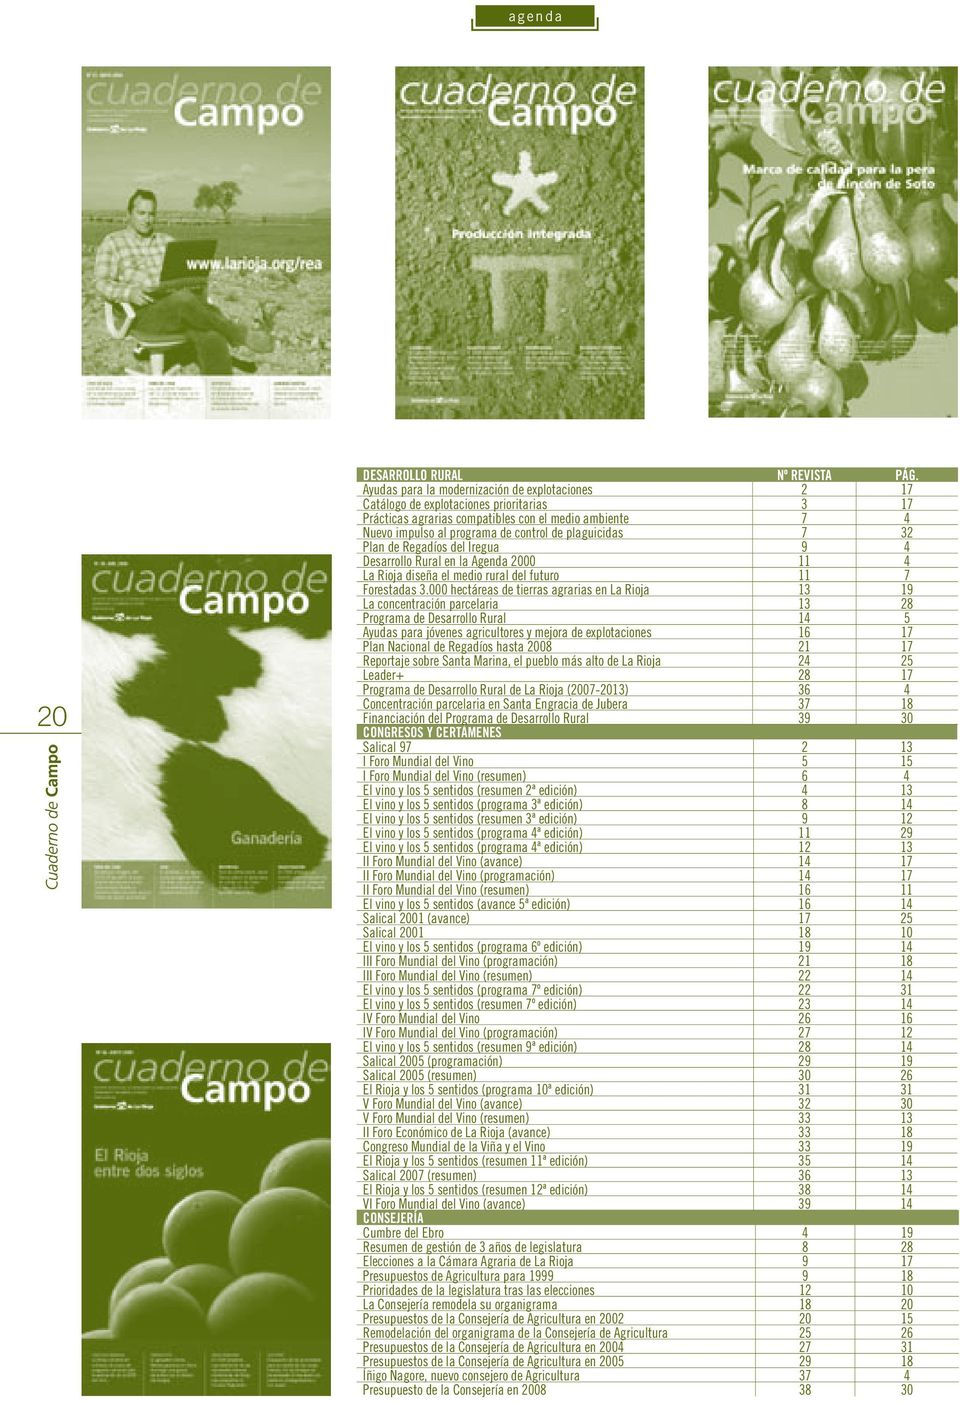 plaguicidas 7 32 Plan de Regadíos del Iregua 9 4 Desarrollo Rural en la Agenda 2000 11 4 La Rioja diseña el medio rural del futuro 11 7 Forestadas 3.